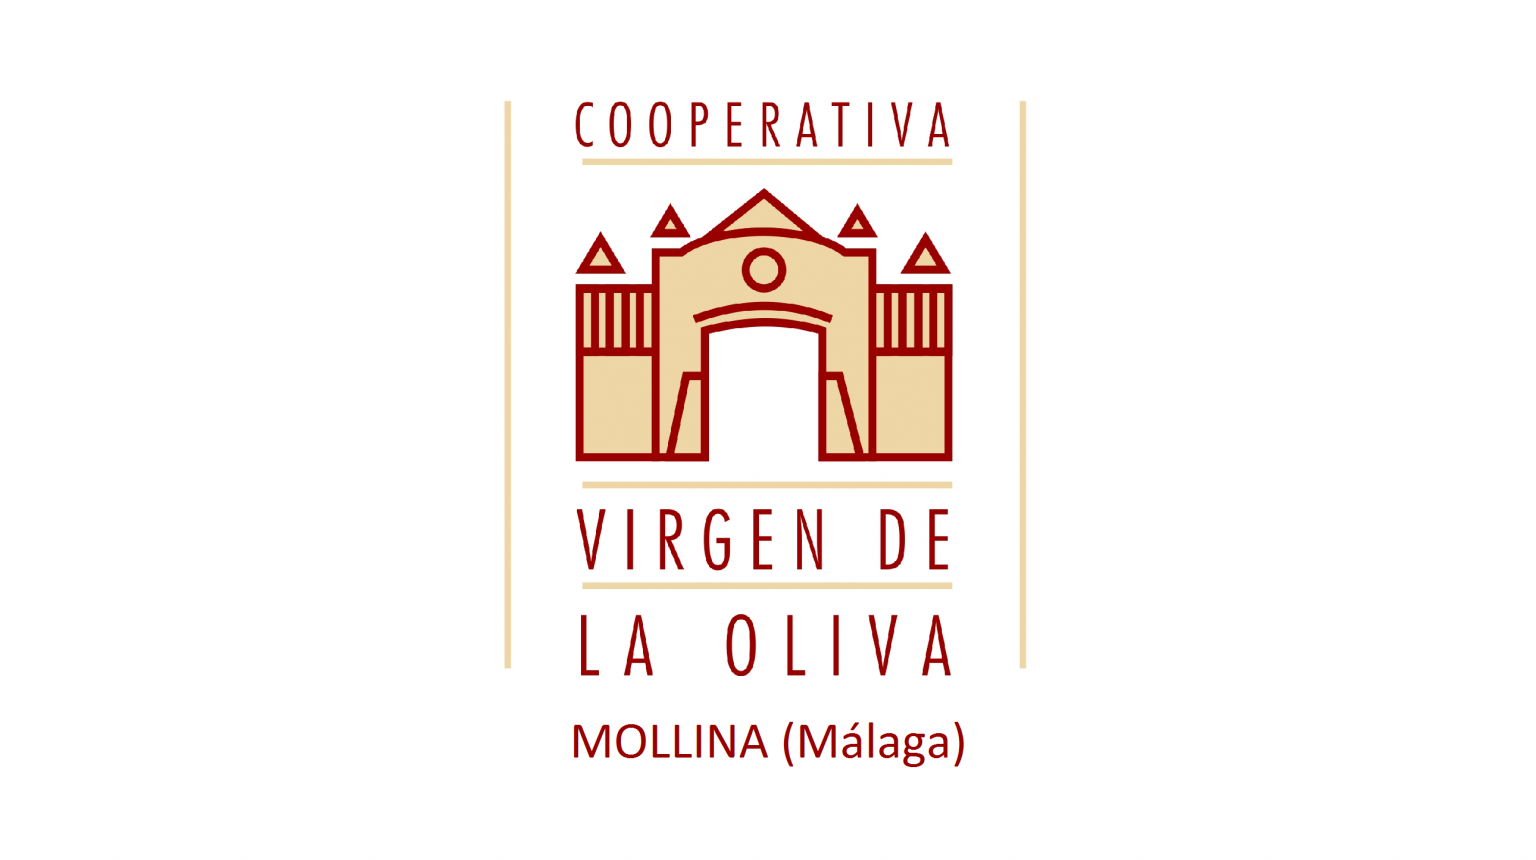 S.Coop.And. Agrícola Virgen De La Oliva